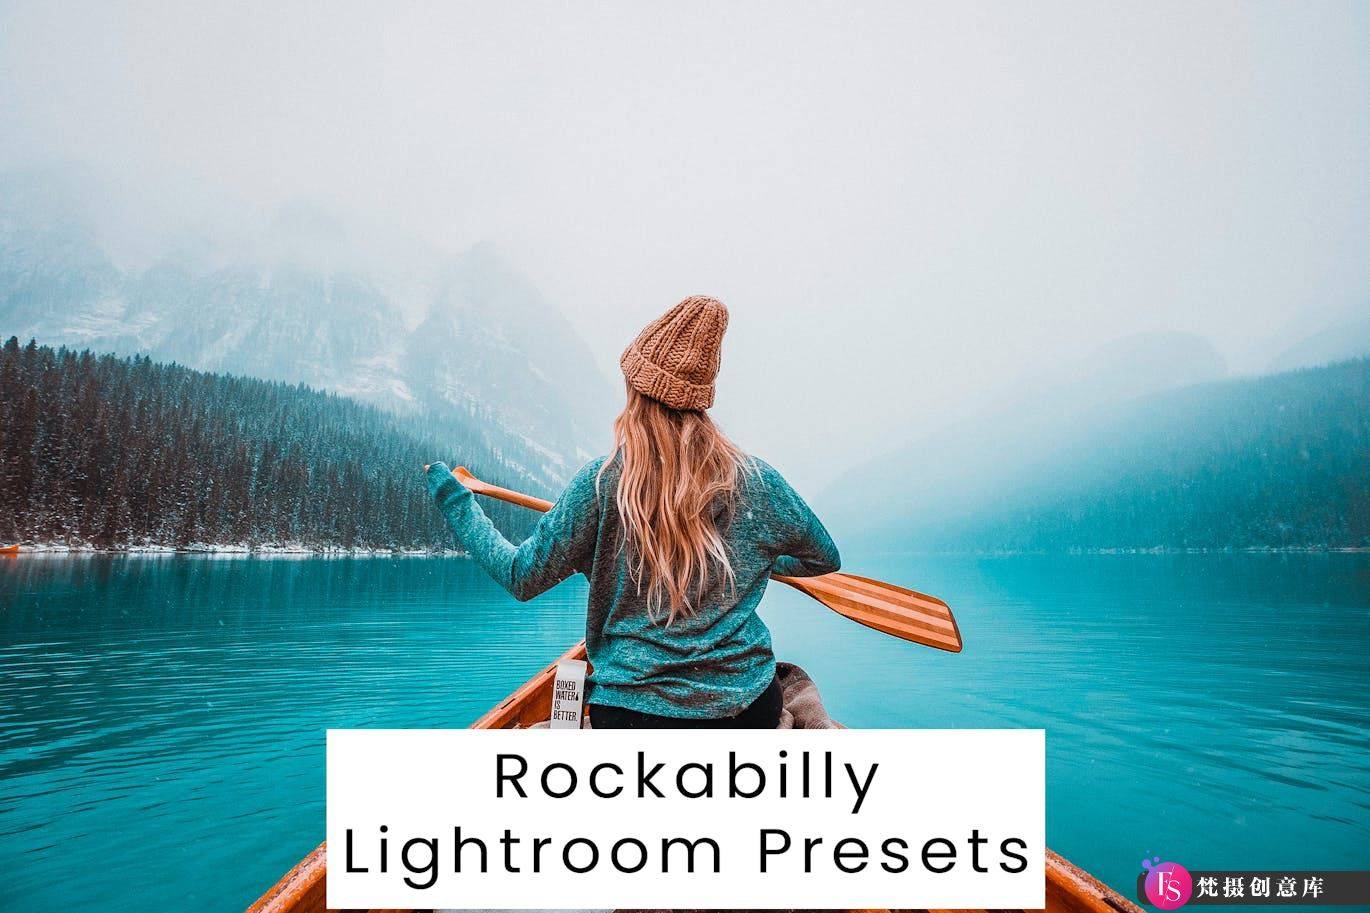 旅拍蓝调电影胶片Lightroom预设 Rockabilly Lightroom Presets-梵摄创意库